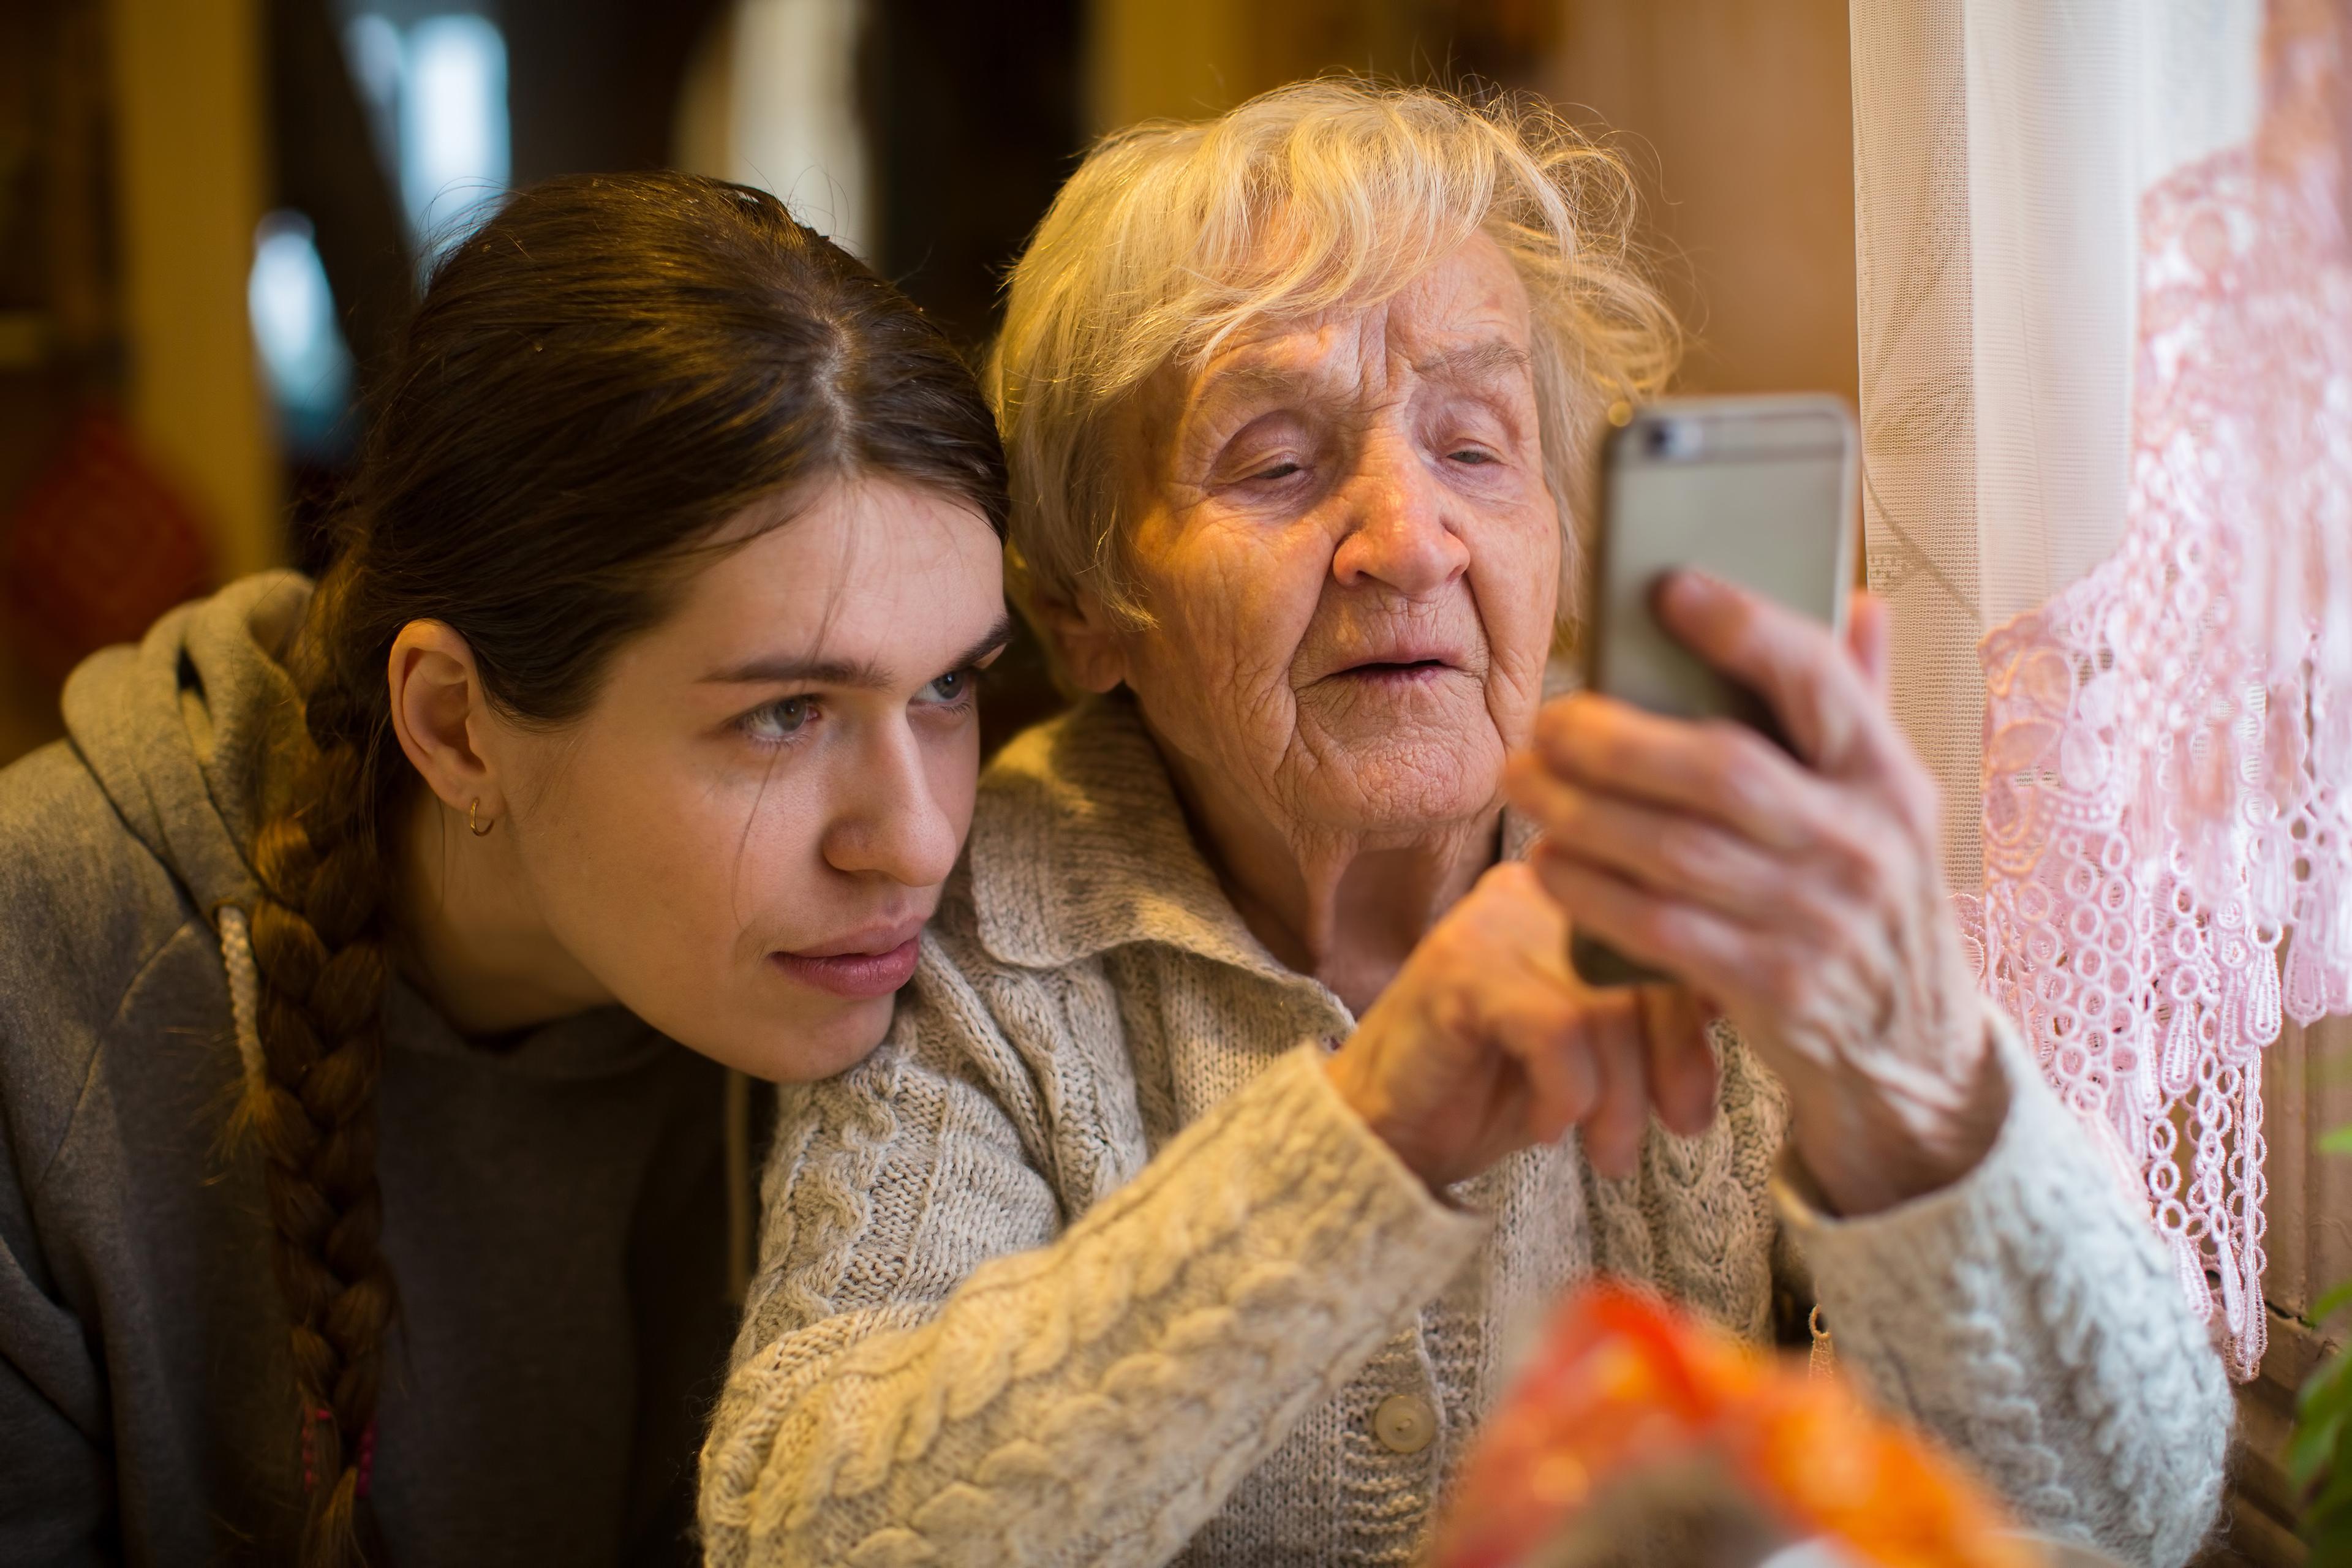 Das Gesicht eines jungen Mädchens ähnelt stark dem einer älteren Dame. Sie schauen gemeinsam auf den Bildschirm eines Mobiltelefons.